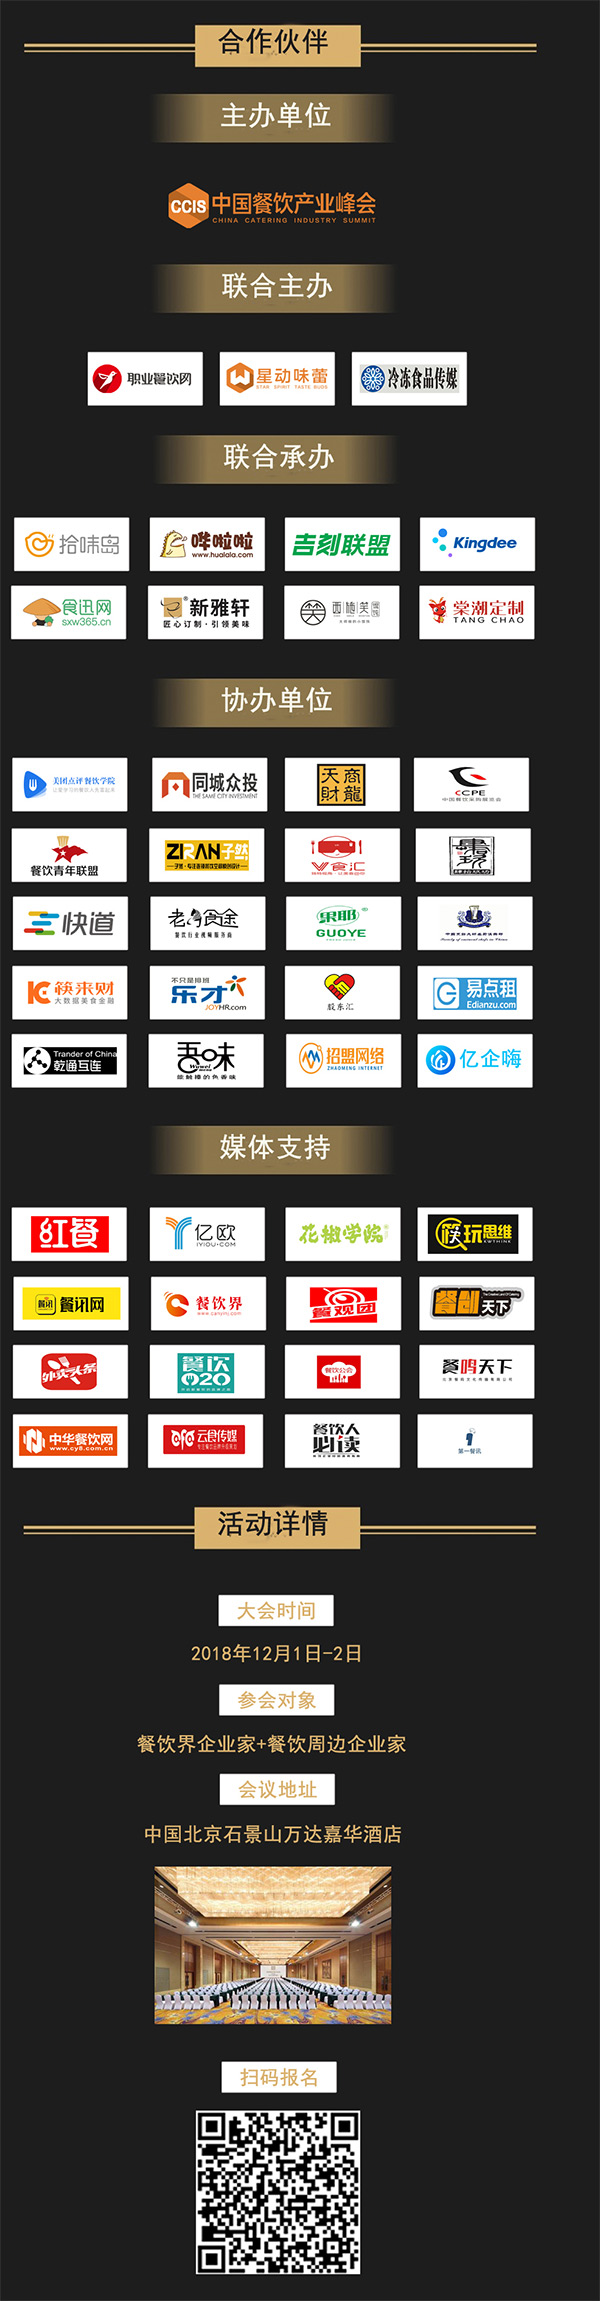 2018第七届中国餐饮产业共享峰会合作媒体